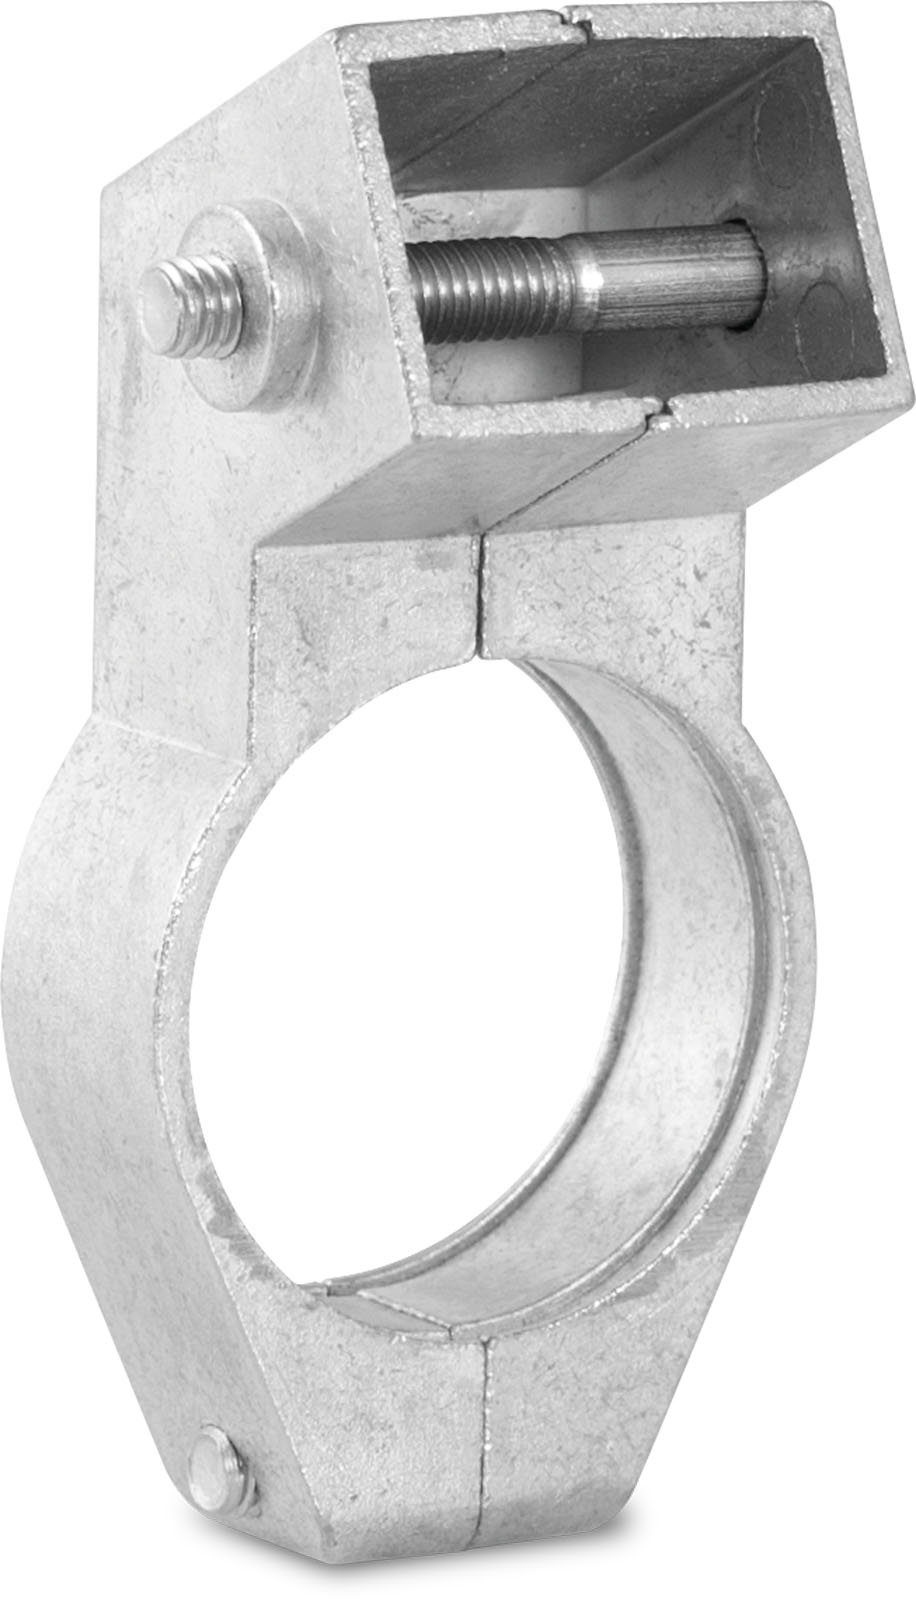 LNB-Halteschelle (40 mm), für DIGIDISH